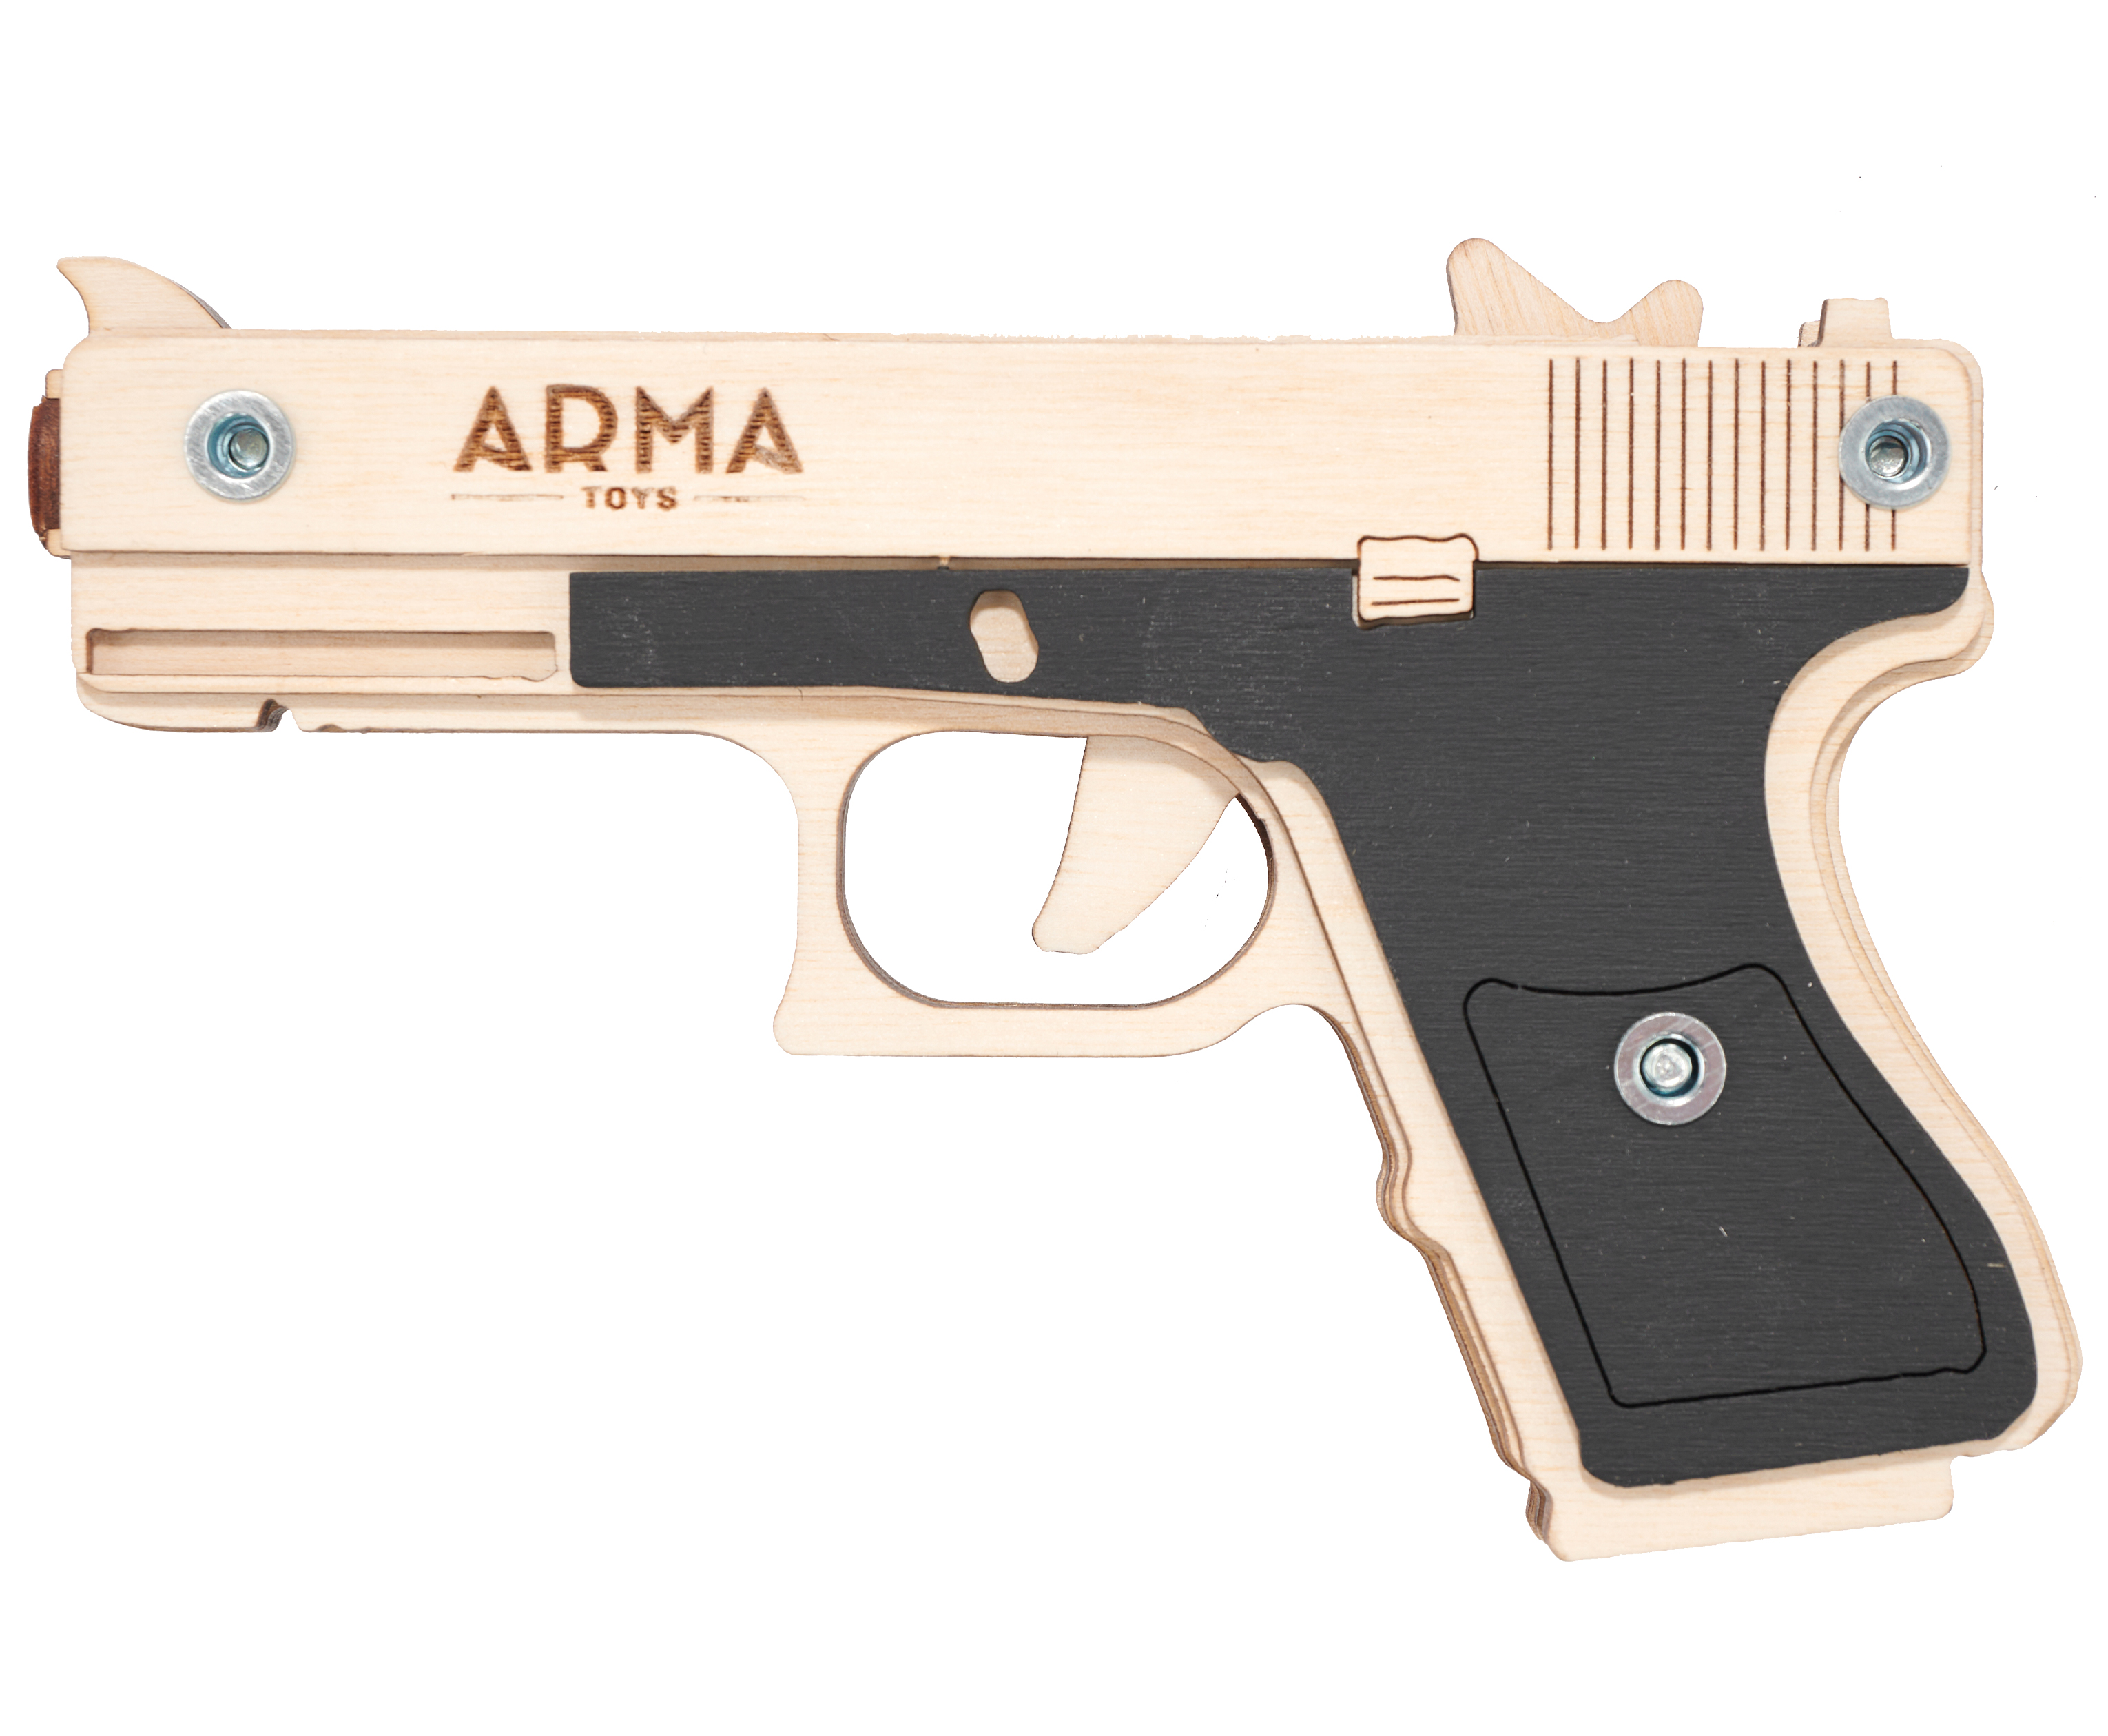 Резинкострел игрушечный Arma toys пистолет Glock Light макет, Глок 26, AT027, окрашенный резинкострел arma toys револьвер frings макет ат002